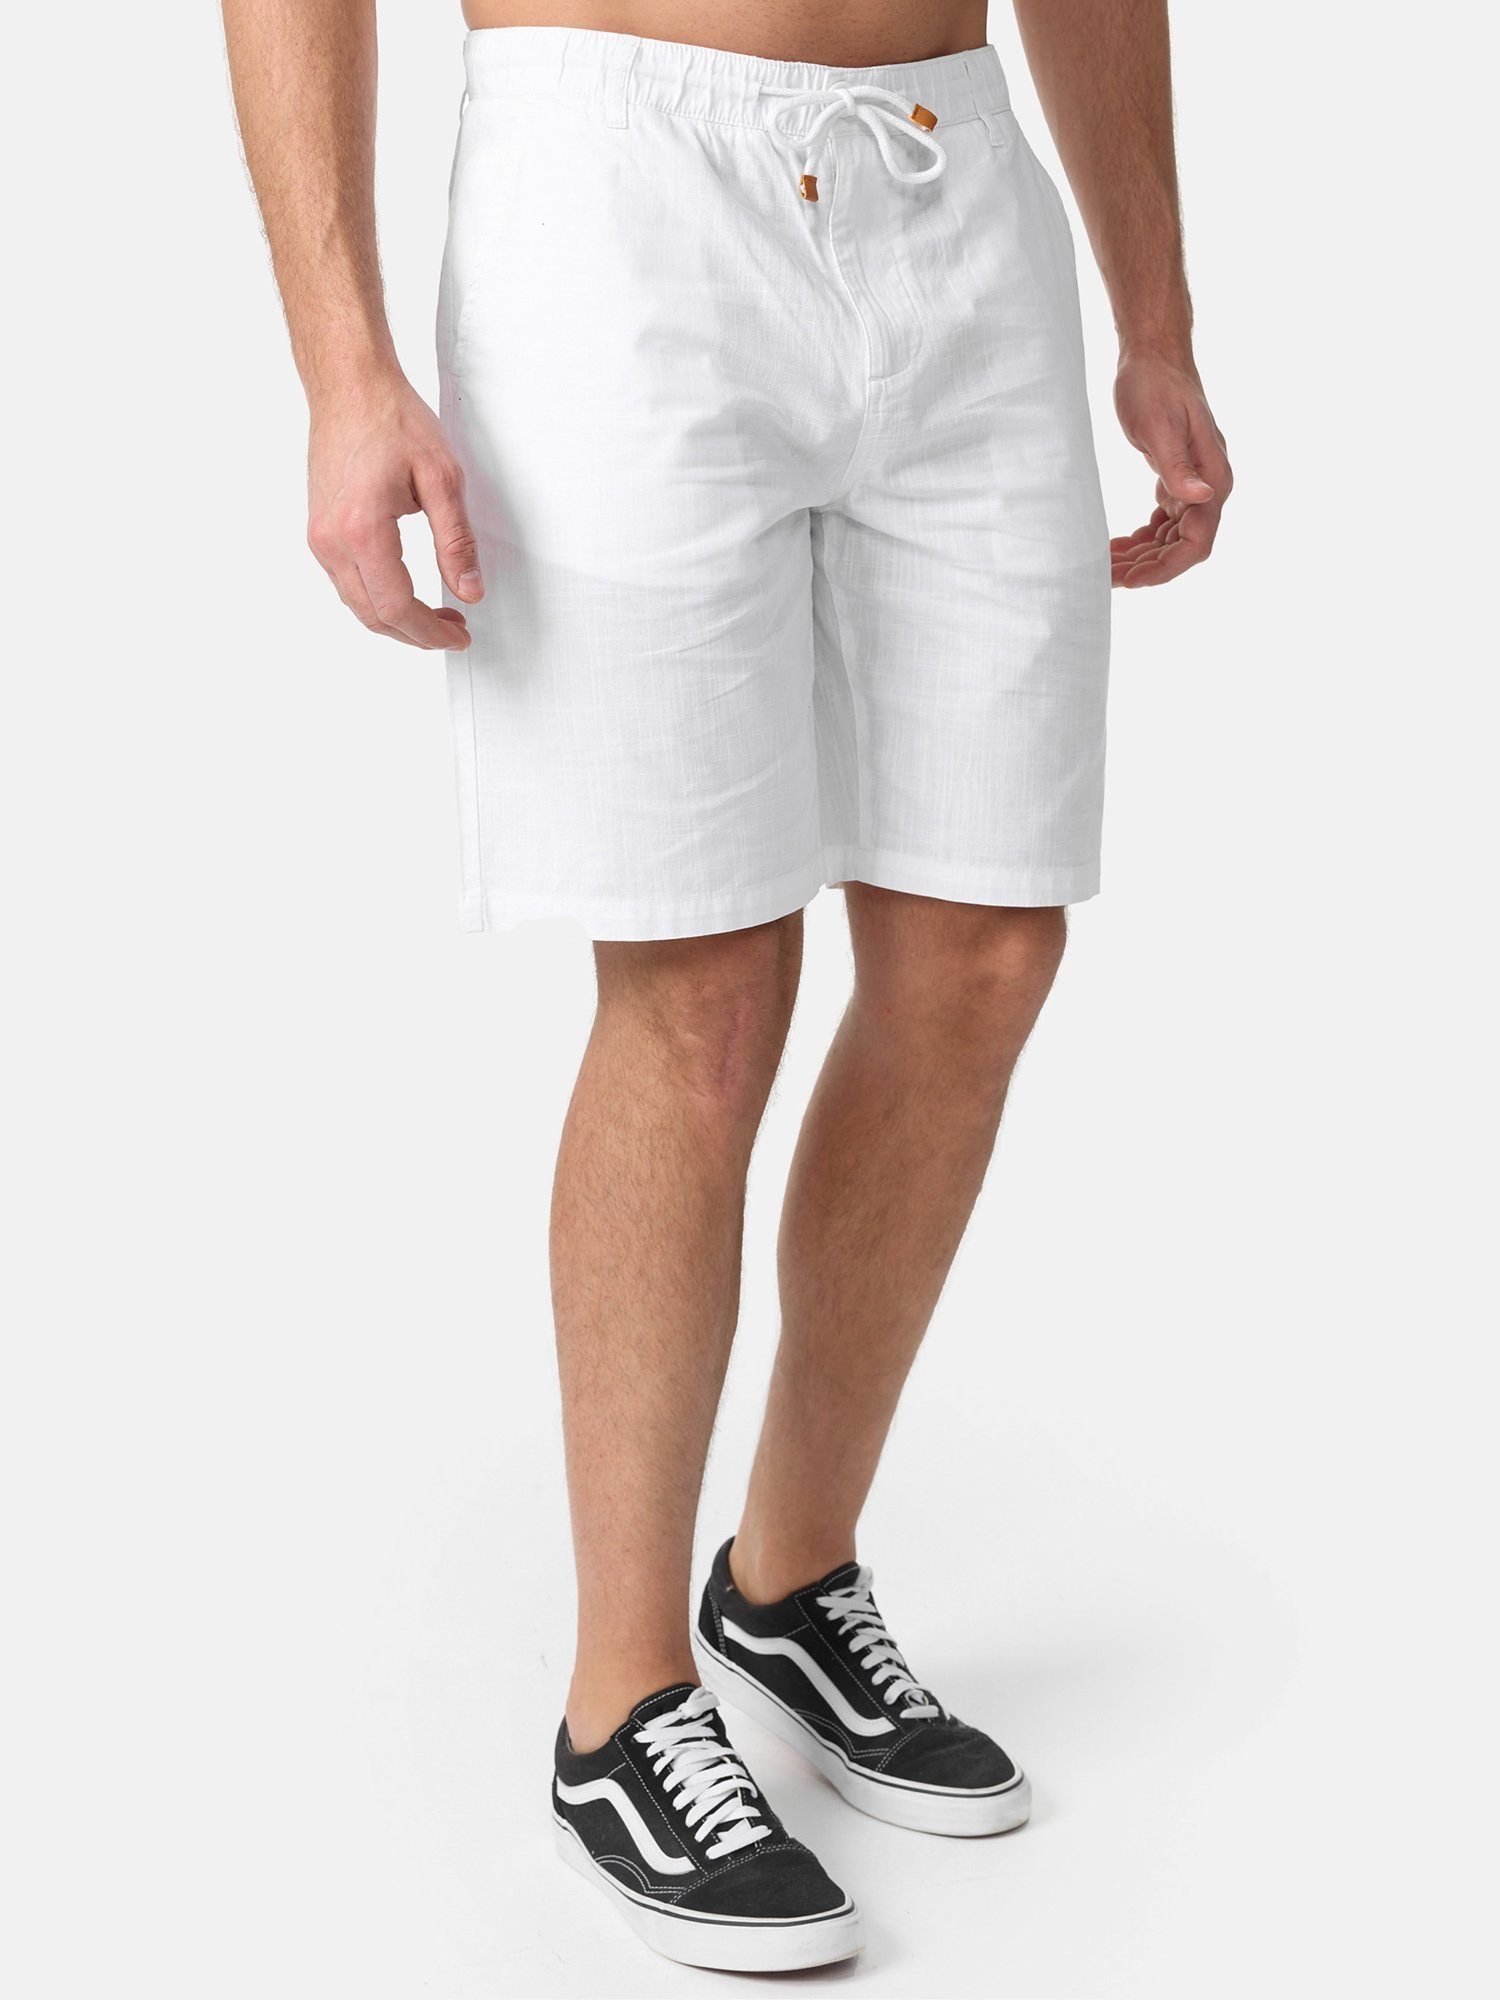 Hose in Leinen-Optik Tazzio Shorts weiß moderne & kurze A205 zeitlose